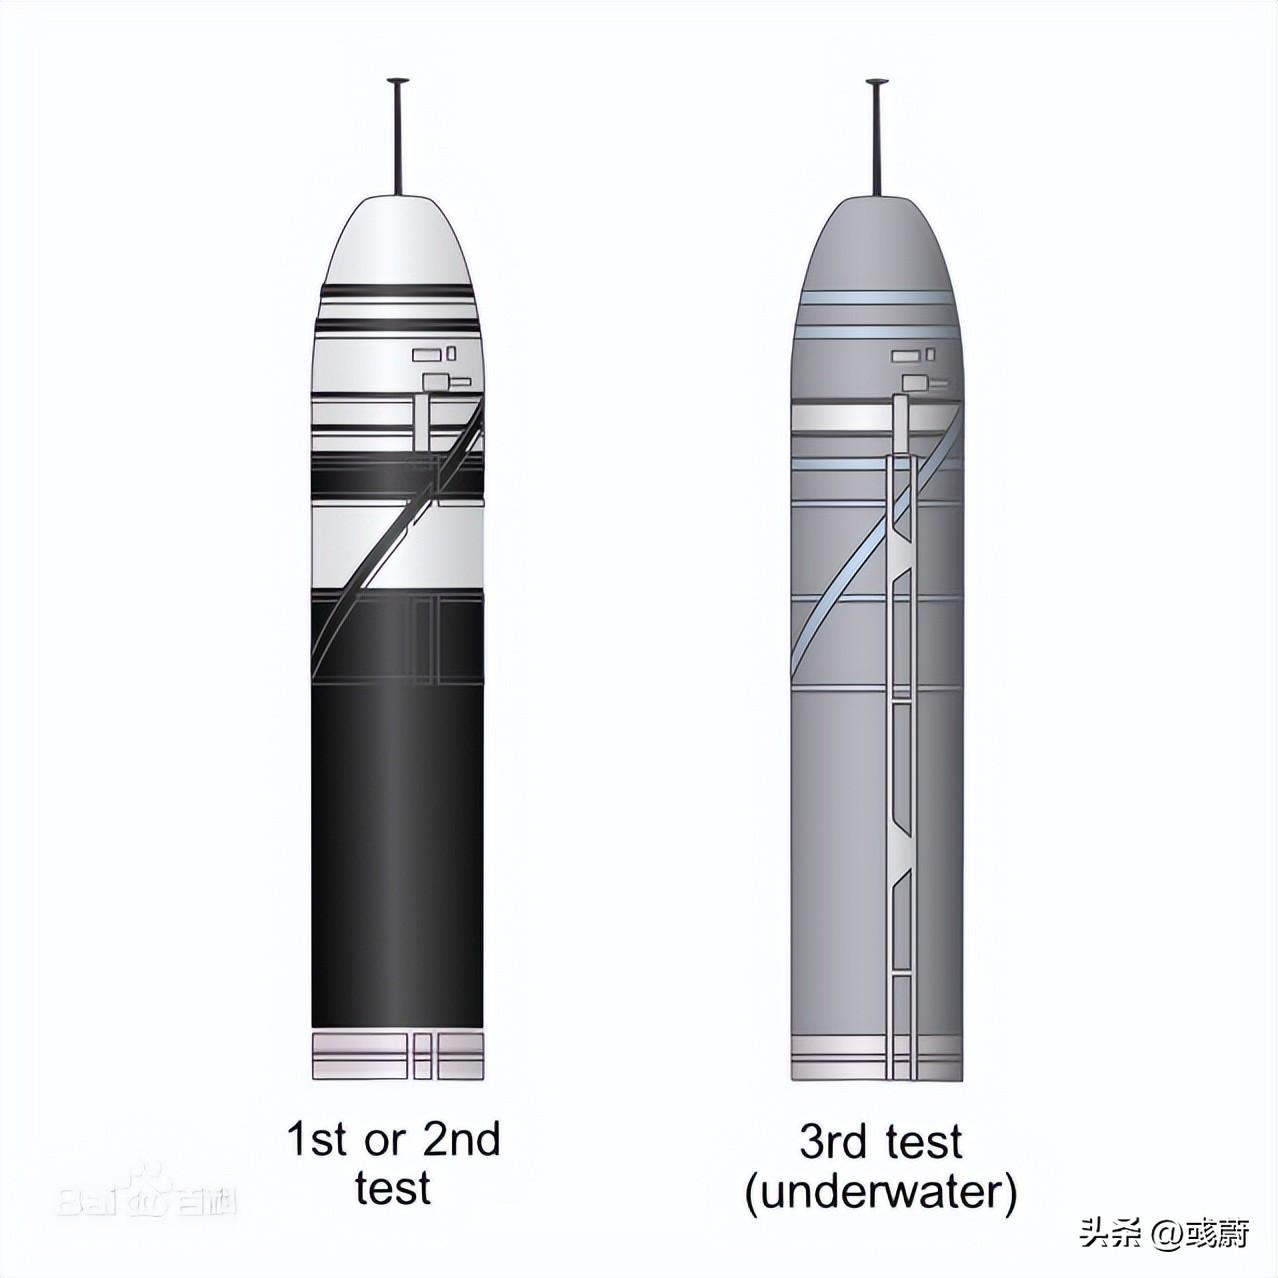 洲际导弹排名(全球十大洲际导弹中，为啥法国M-51最快、DF-41只能位居第二？)